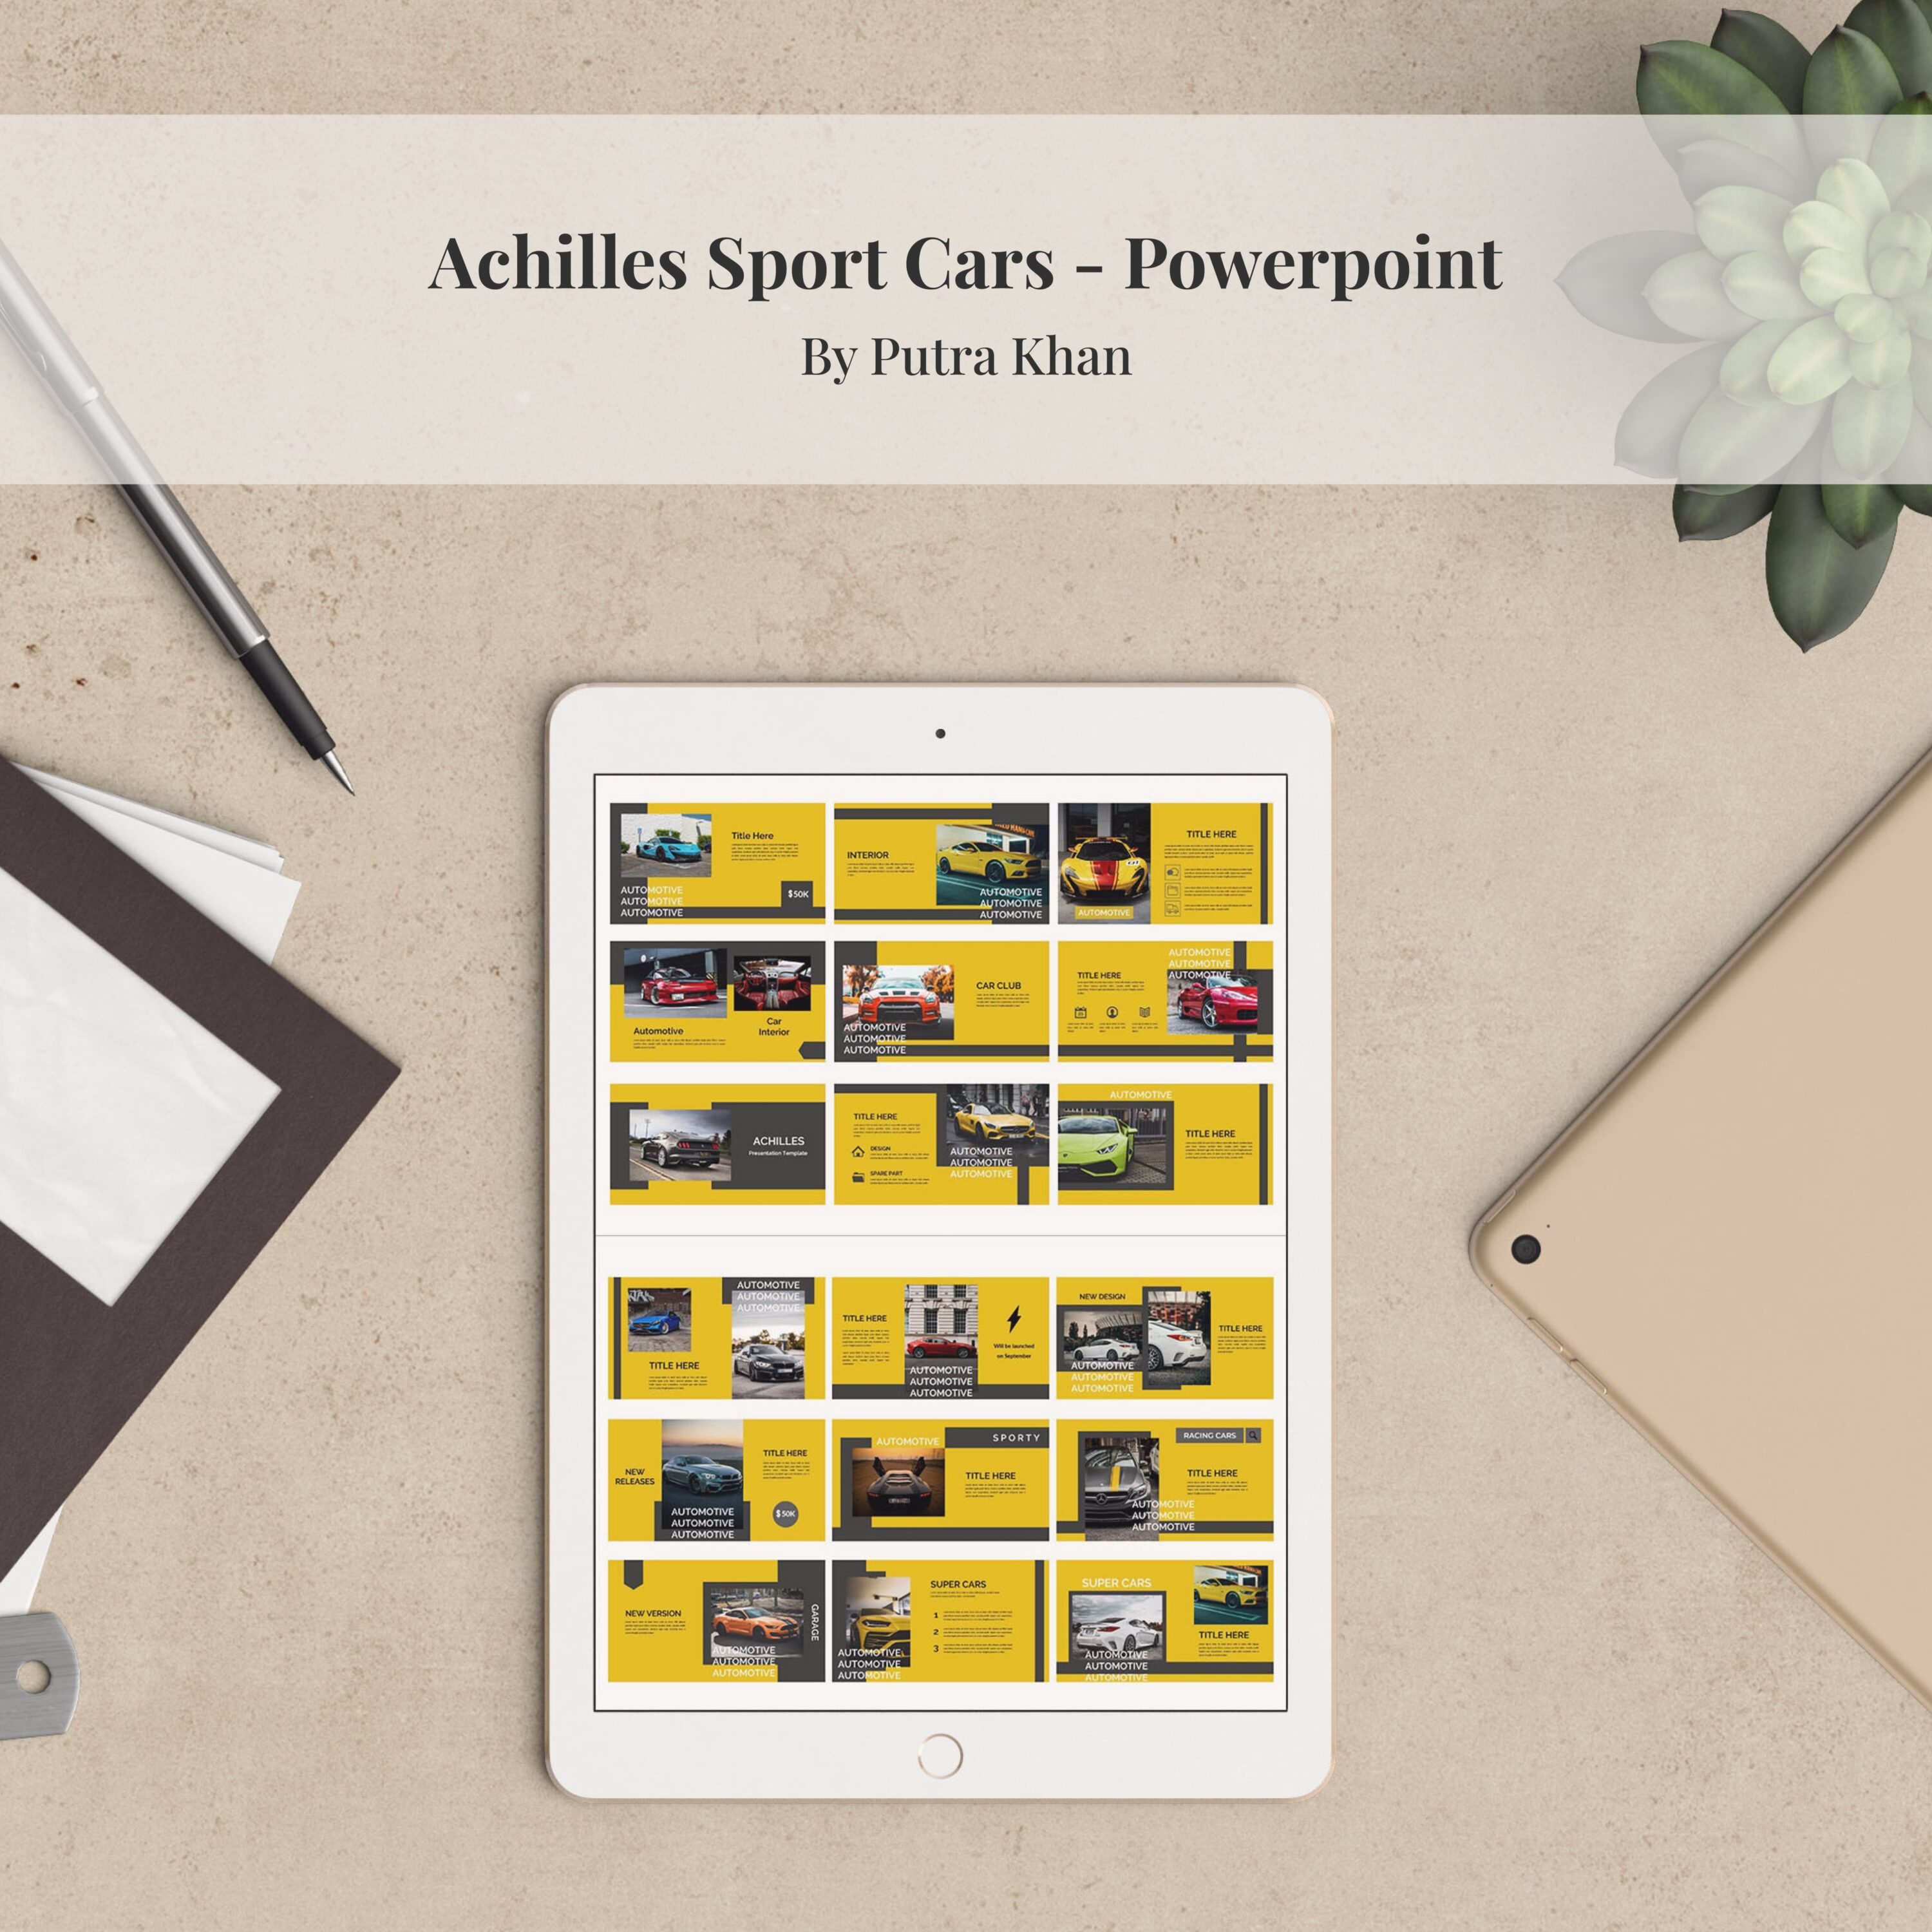 Achilles Sport Cars - Powerpoint.